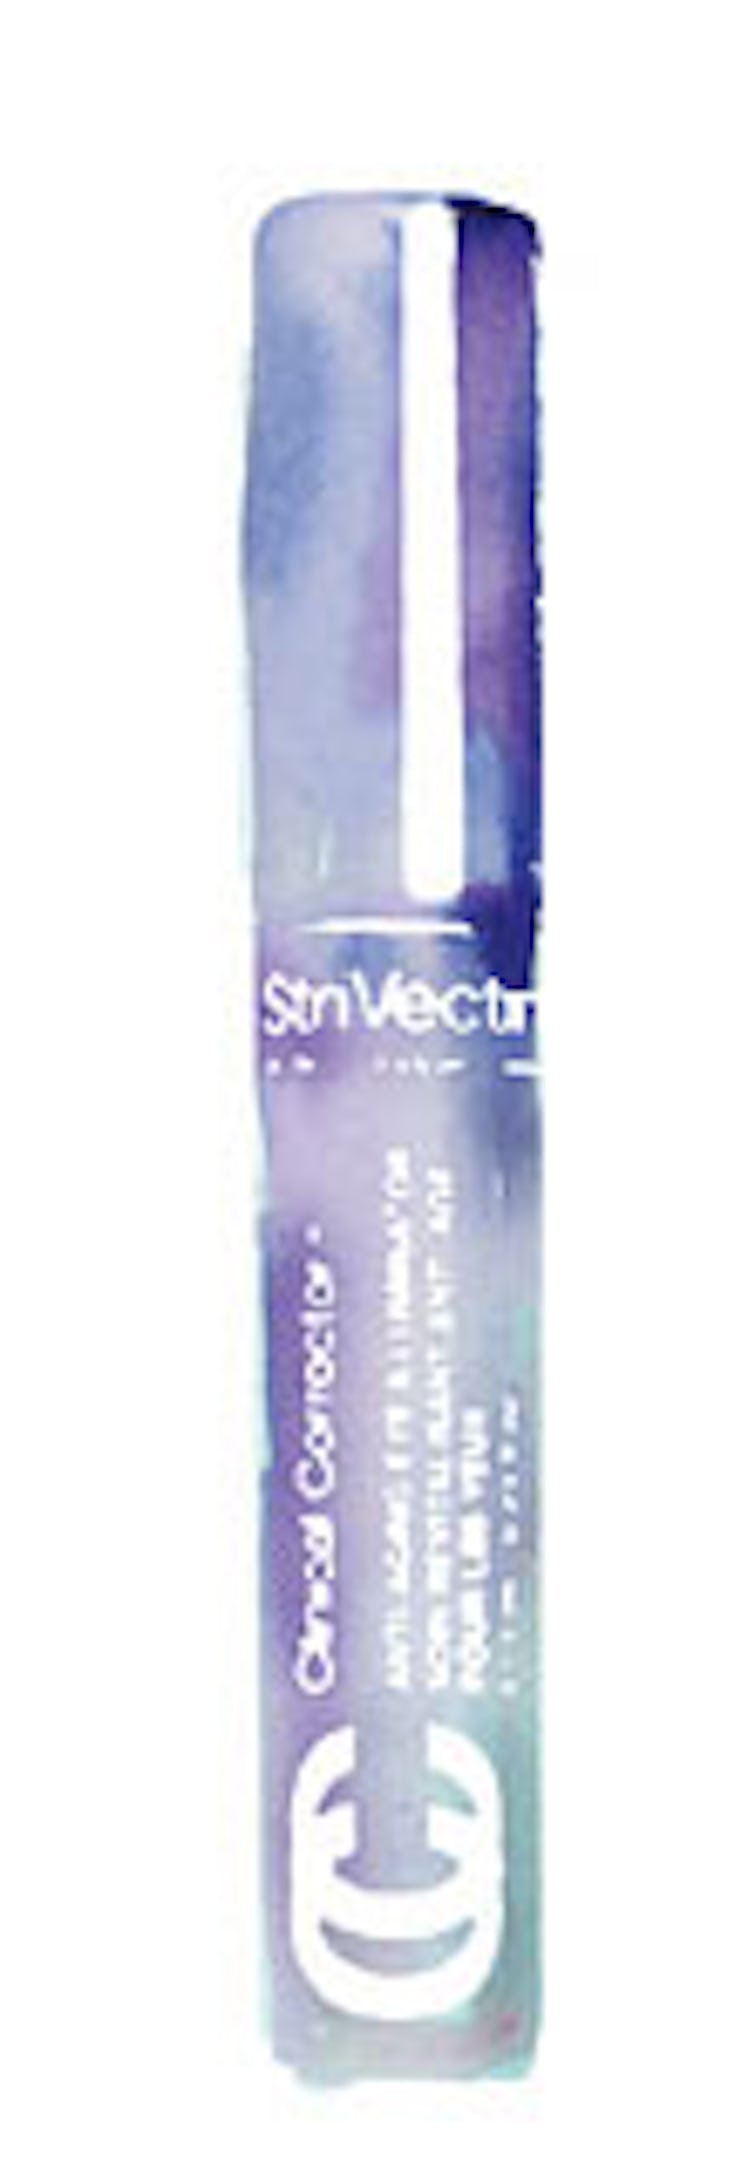 StriVectin Clinical Corrector Anti-Aging Eye Illuminator